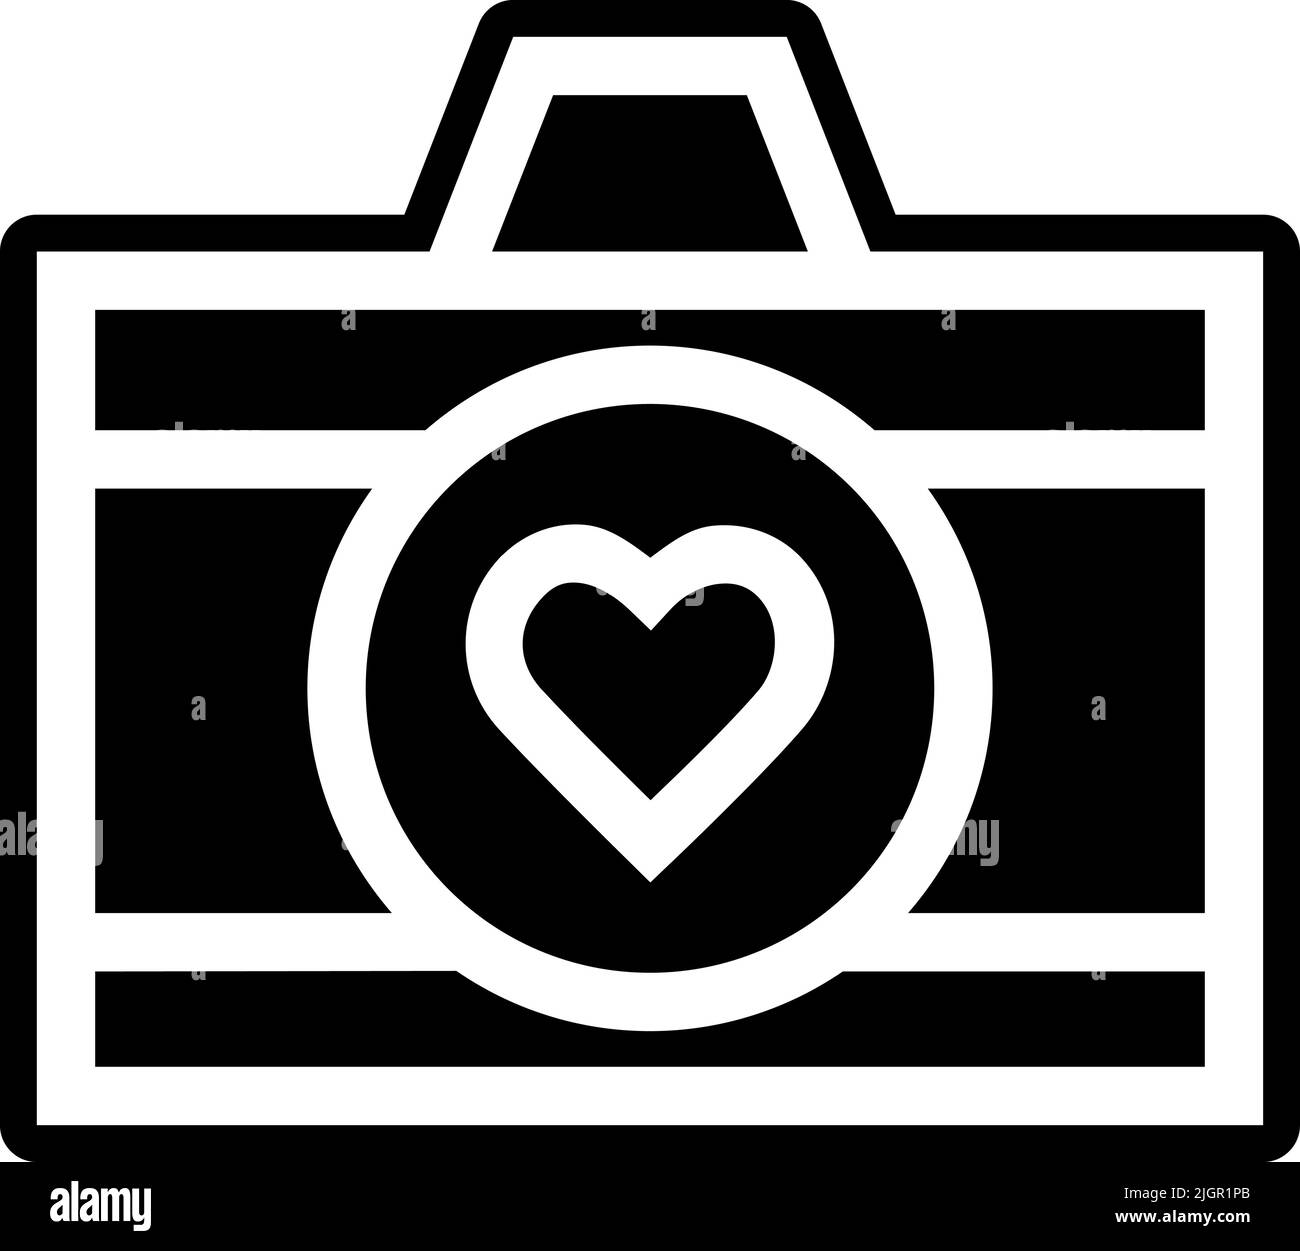 Cámara del corazón Imágenes de stock en blanco y negro - Alamy